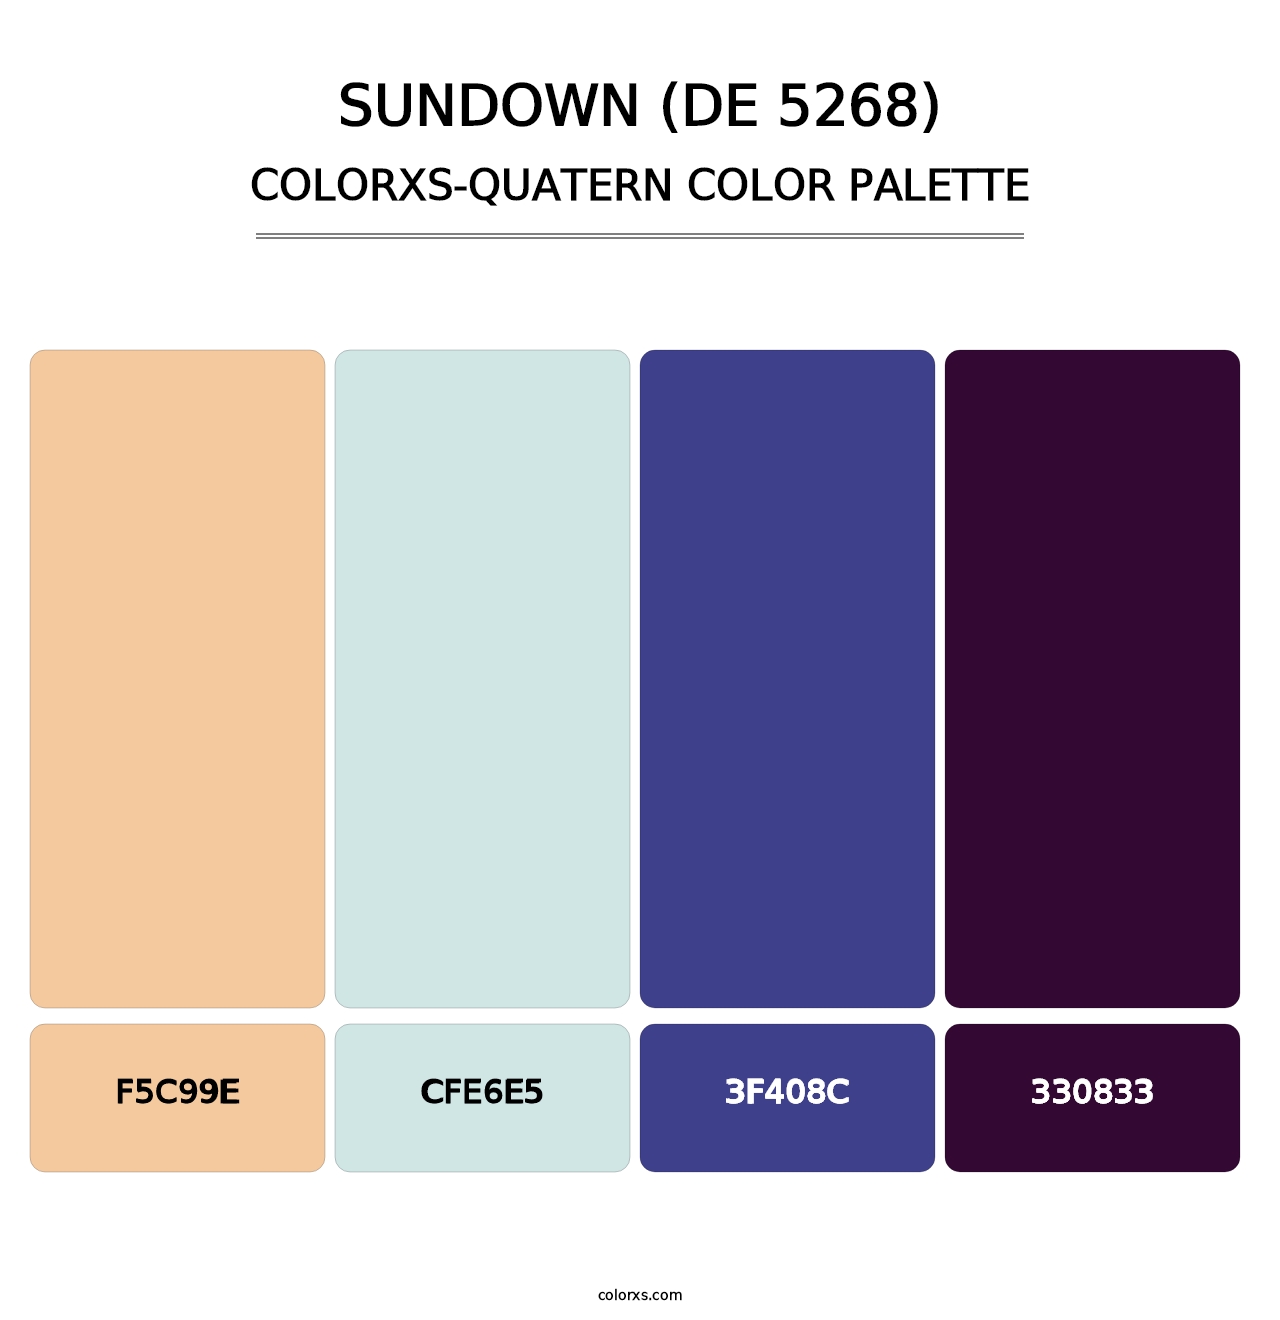 Sundown (DE 5268) - Colorxs Quatern Palette